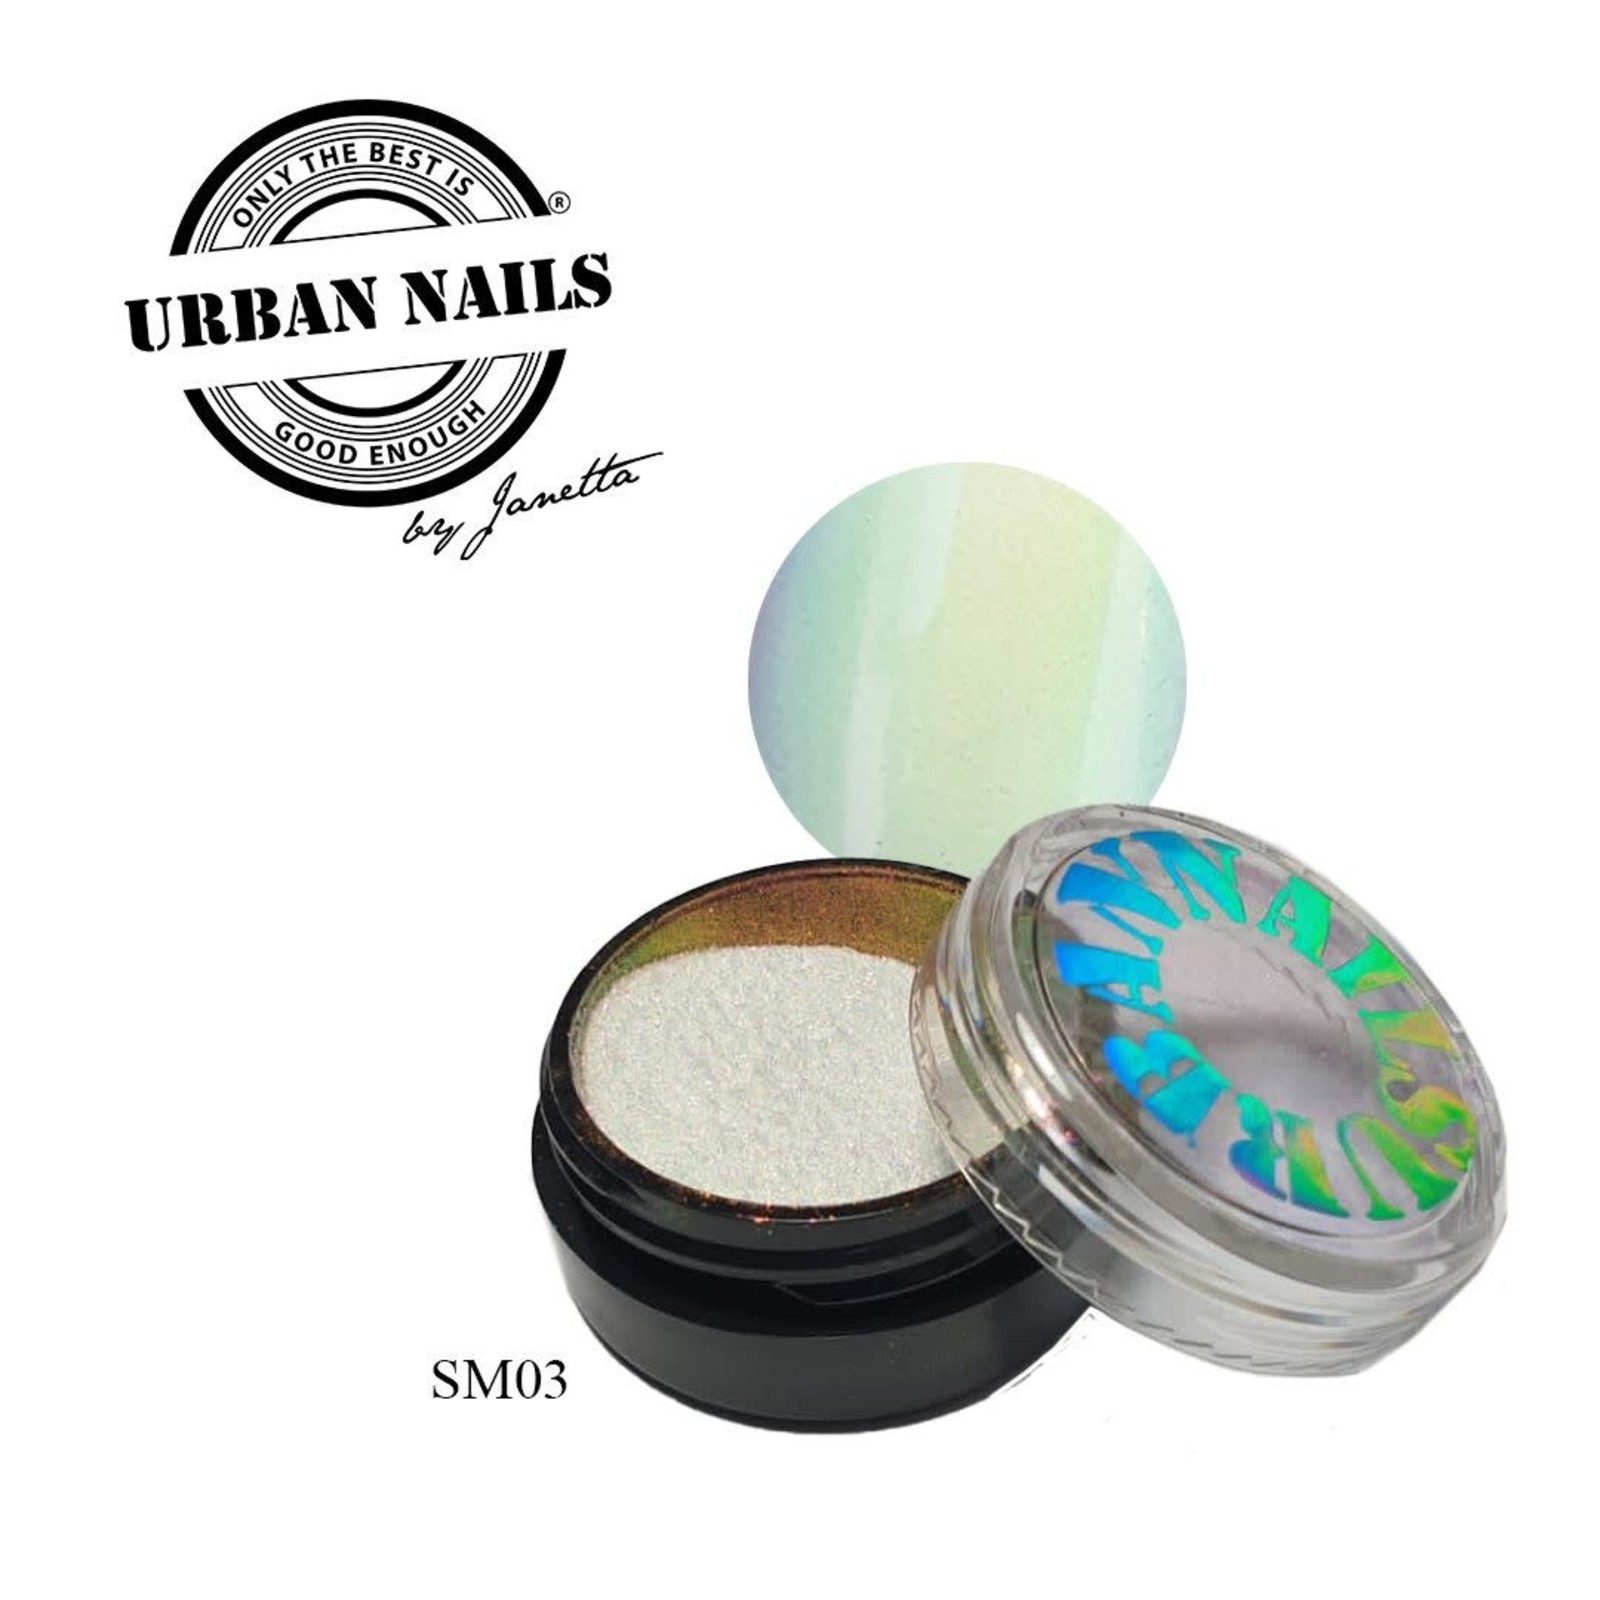 Urban nails Super Mirror Pigment SM03